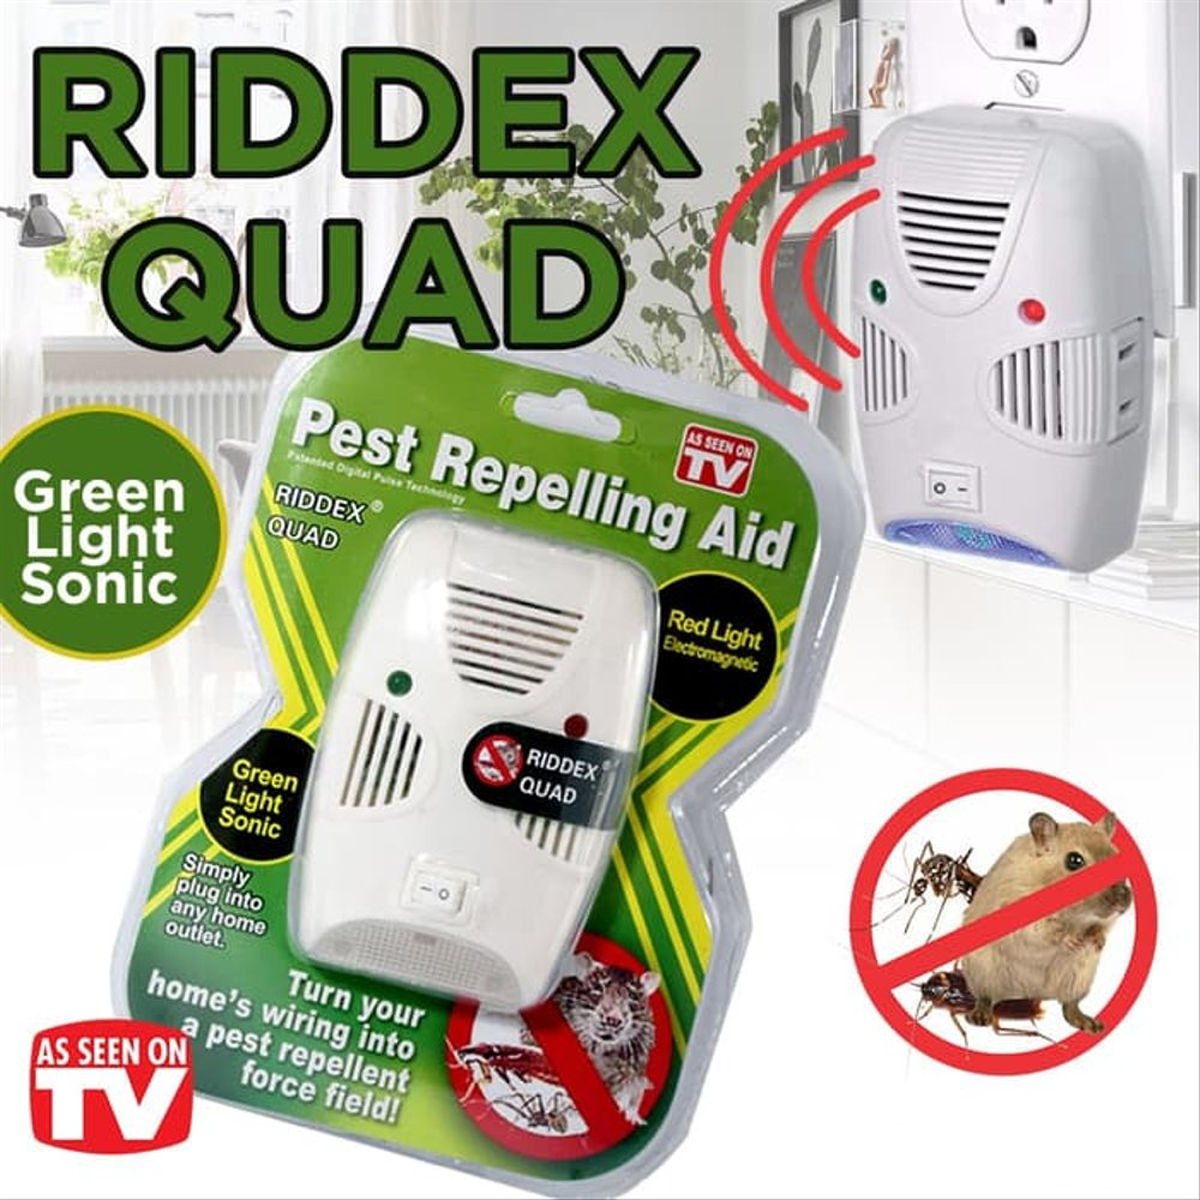 Riddex Quad Digital Pest Repelling Aid